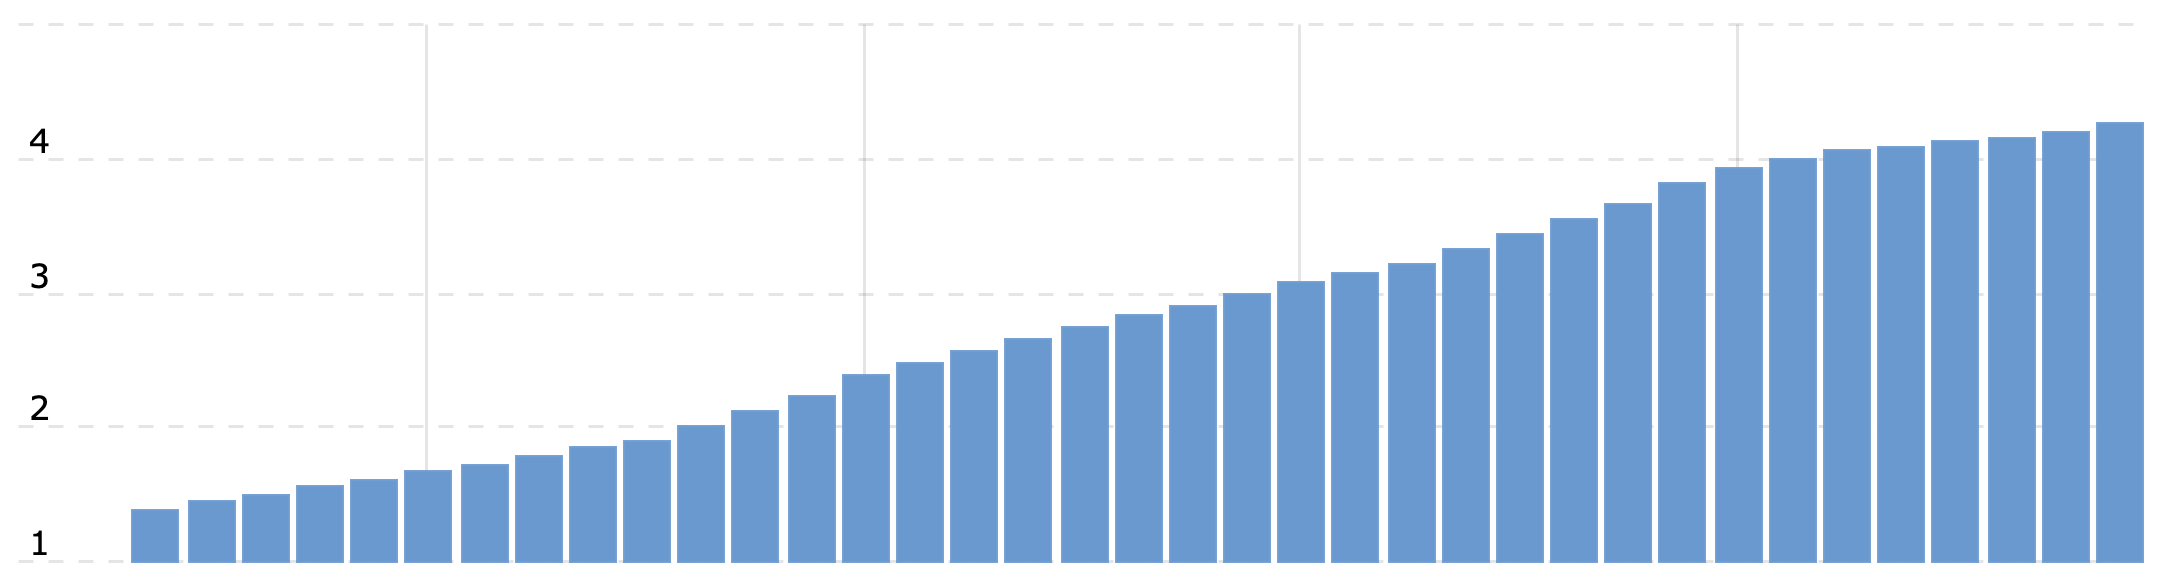 GoDaddy's annual revenue, in billions of USD, 2014-2024